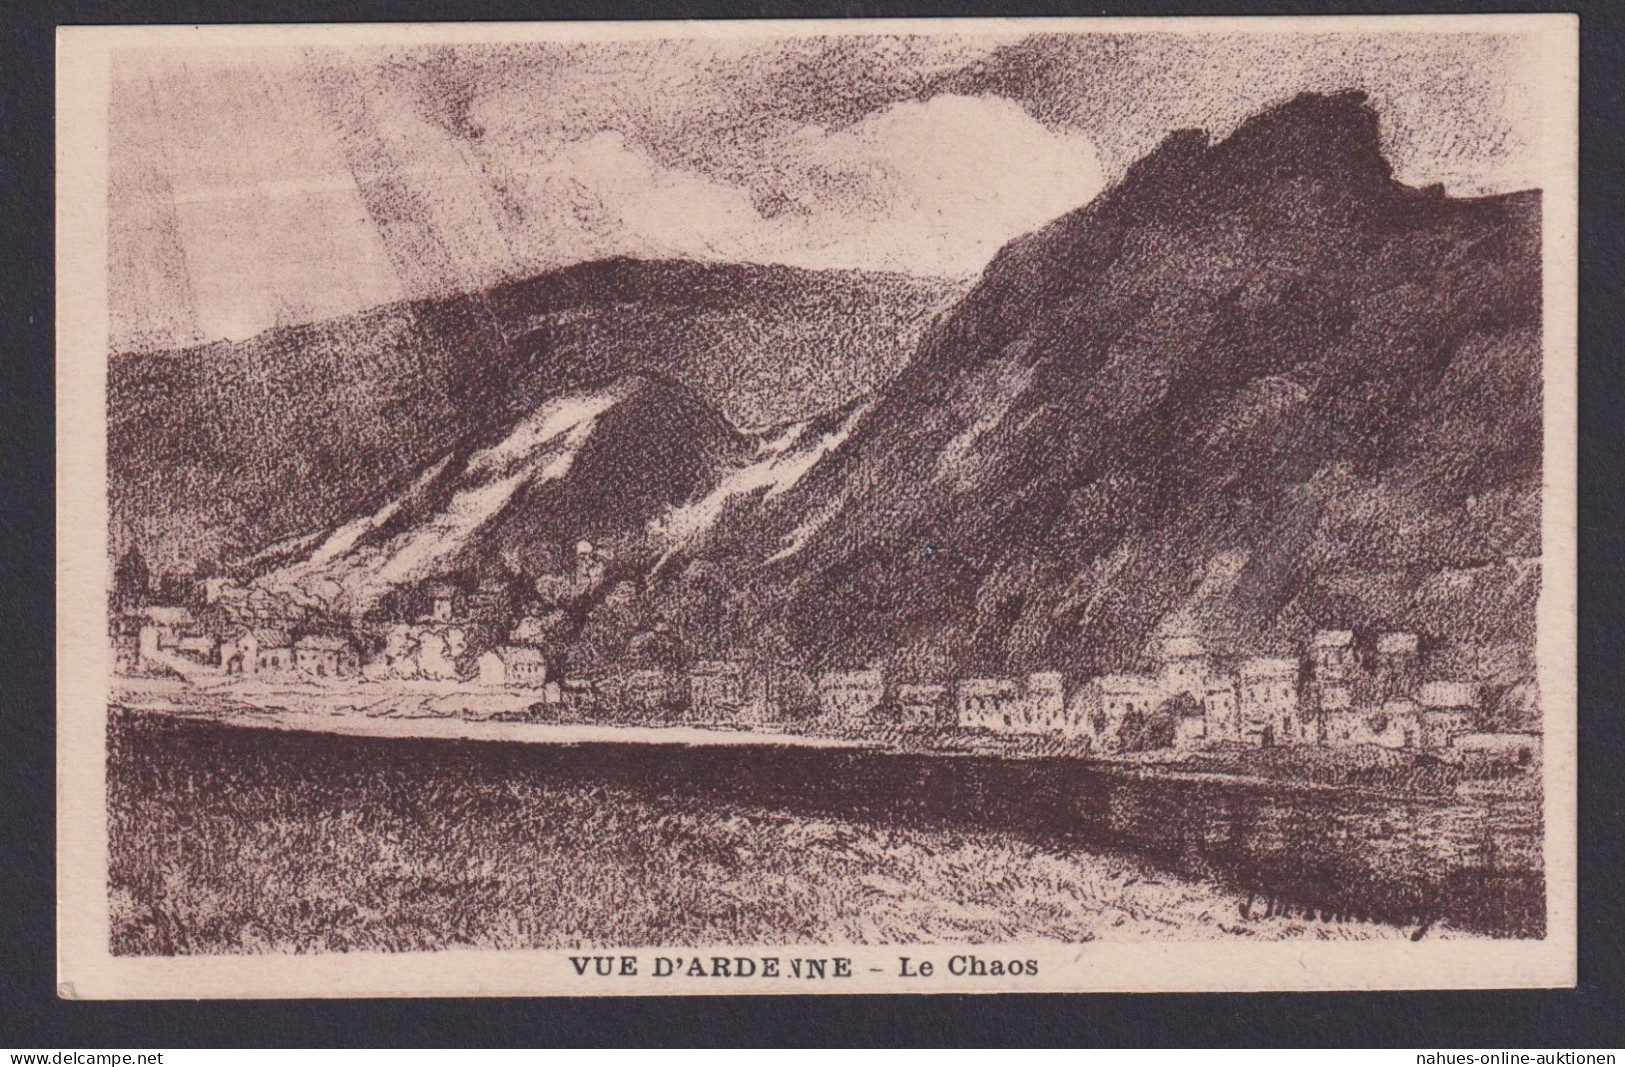 Frankreich Künstler Privatganzsache Philatelie Charieville Messe Exposition - Cartoline Postali Ristampe (ante 1955)